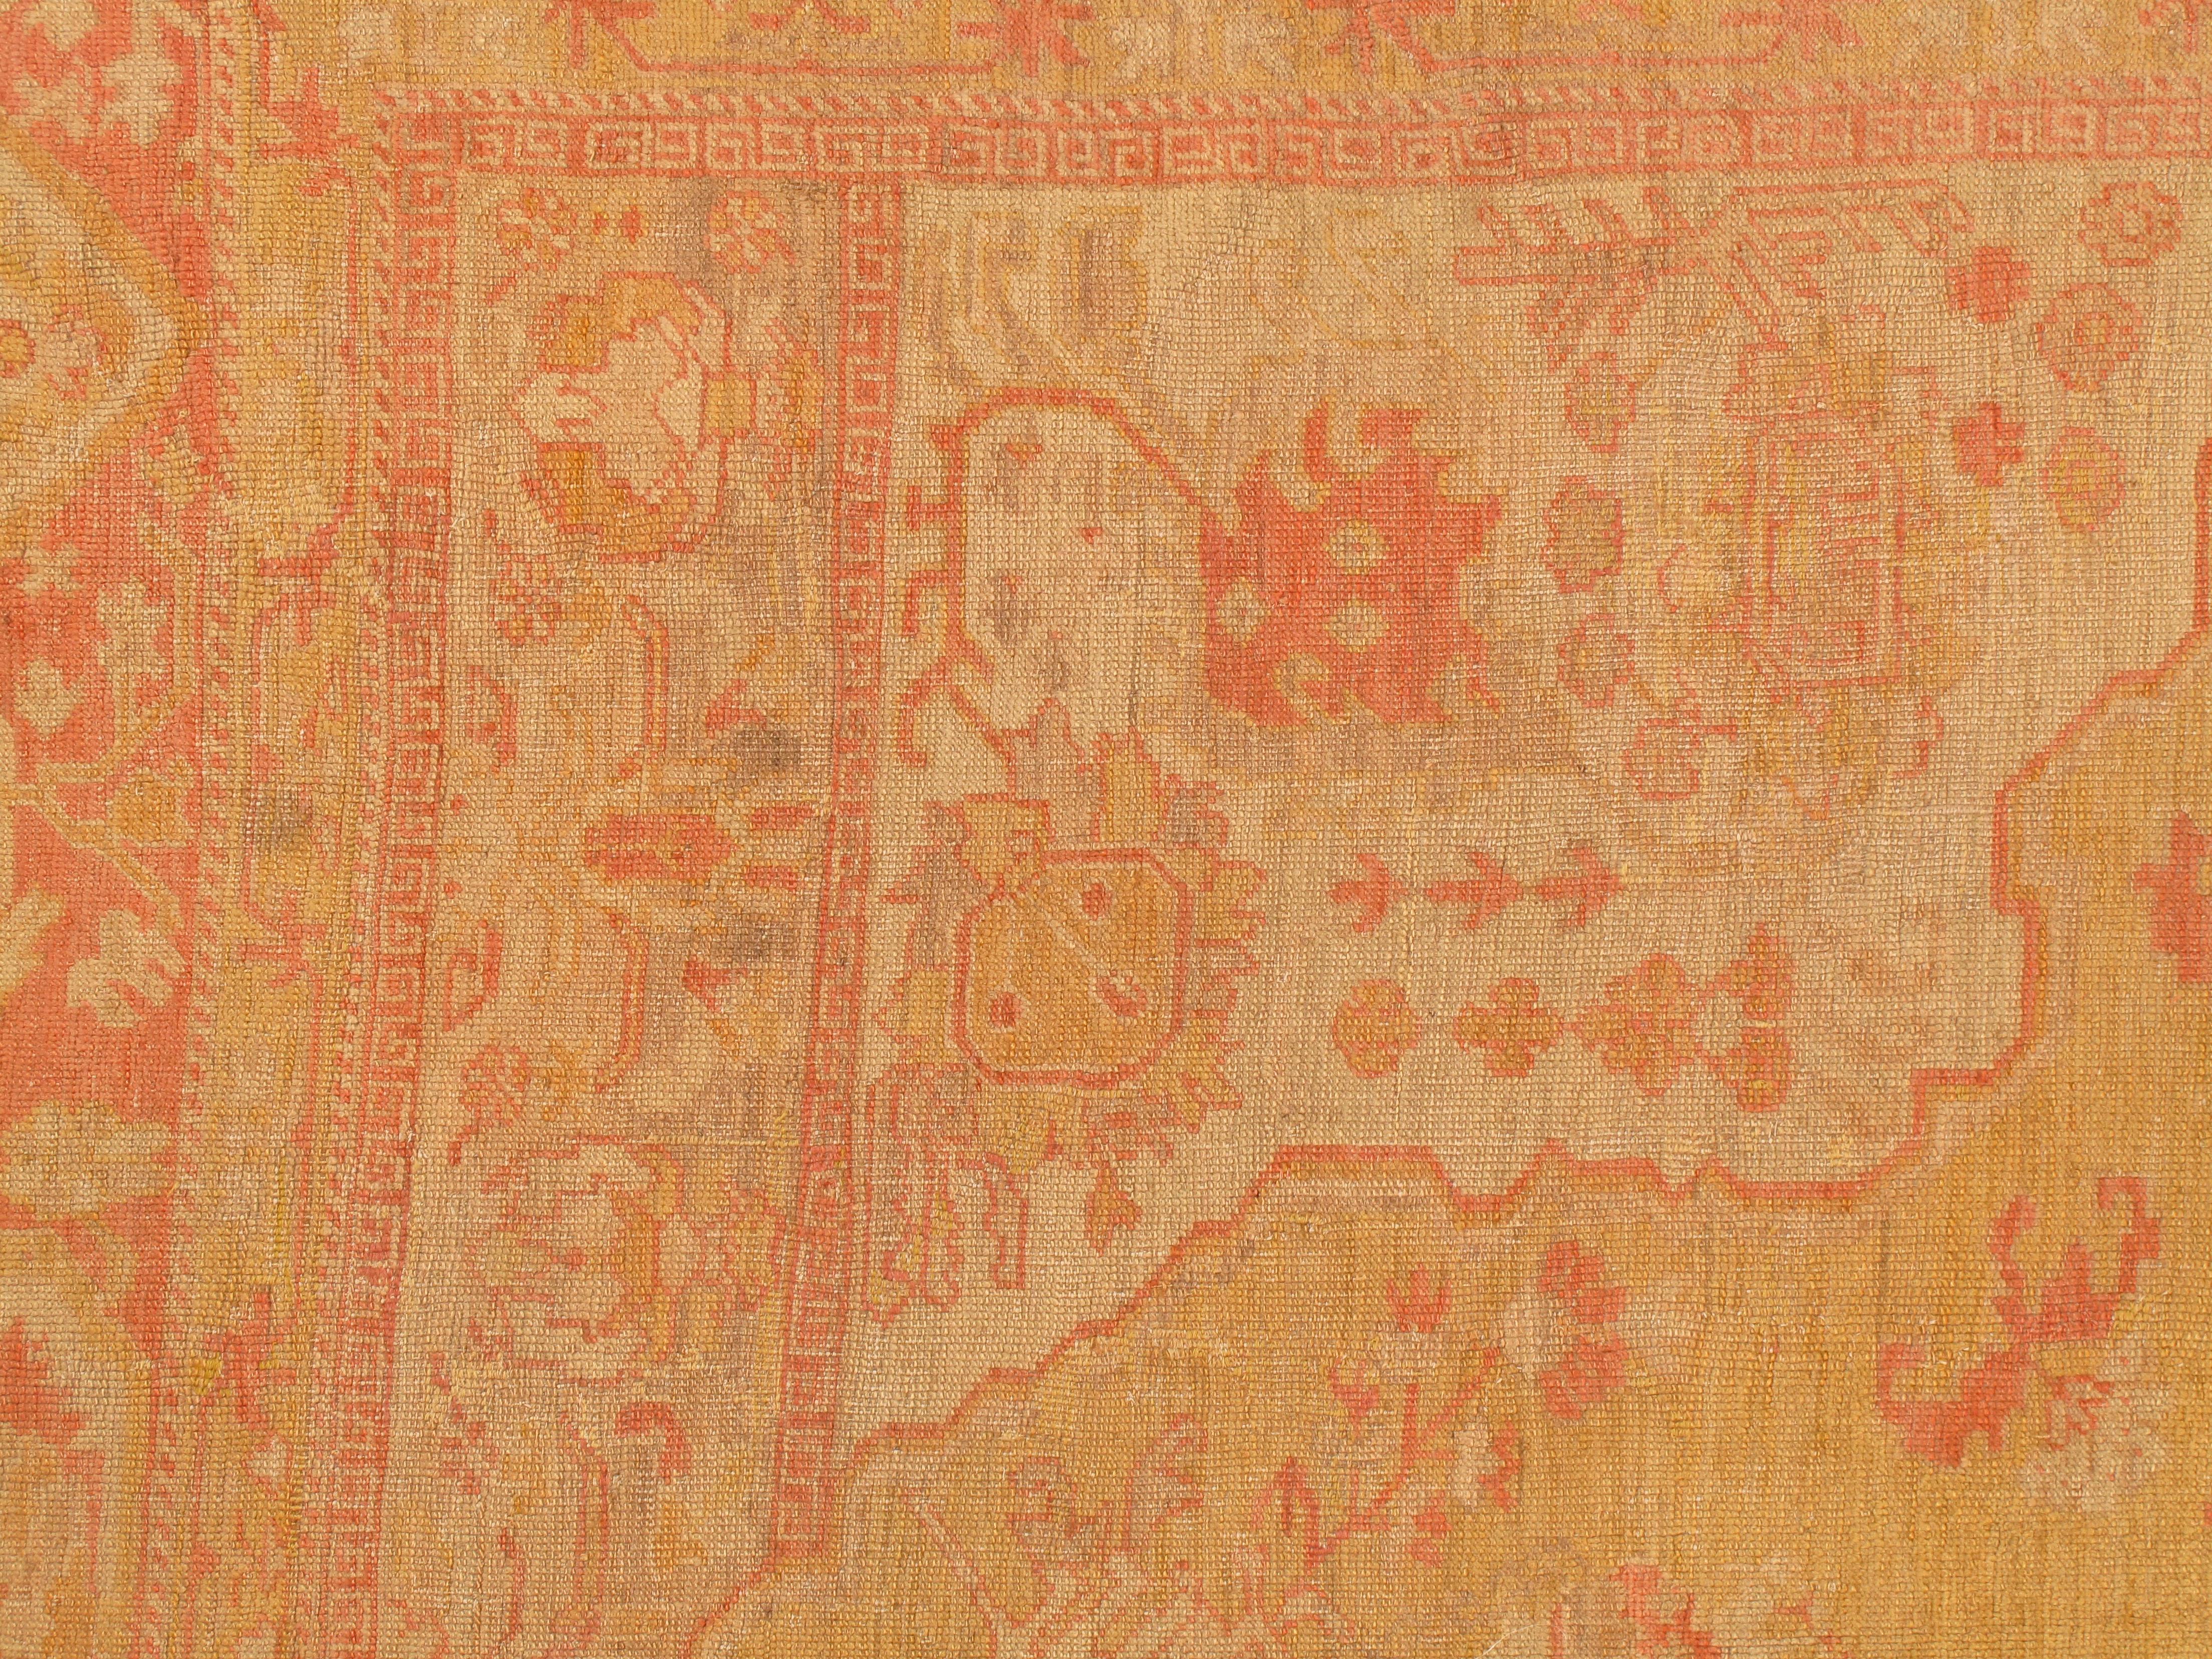 Antique Turkish Oushak Carpet, Handmade Oriental Rug, Gold, Taupe, Shrimp Coral For Sale 4